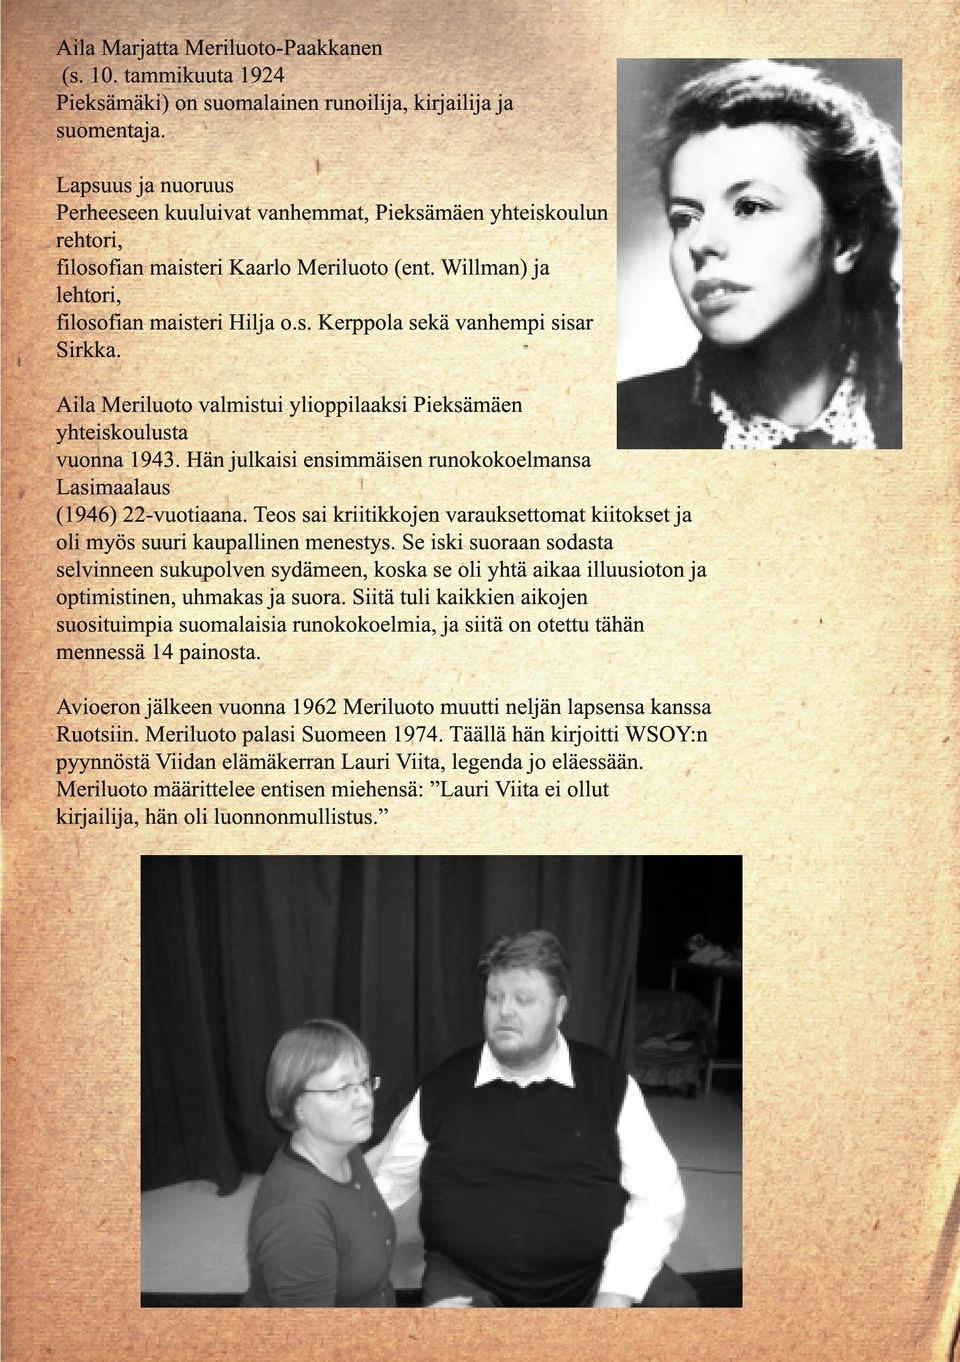 Aila Meriluoto valmistui ylioppilaaksi Pieksämäen yhteiskoulusta vuonna 1943. Hän julkaisi ensimmäisen runokokoelmansa Lasimaalaus (1946) 22-vuotiaana.